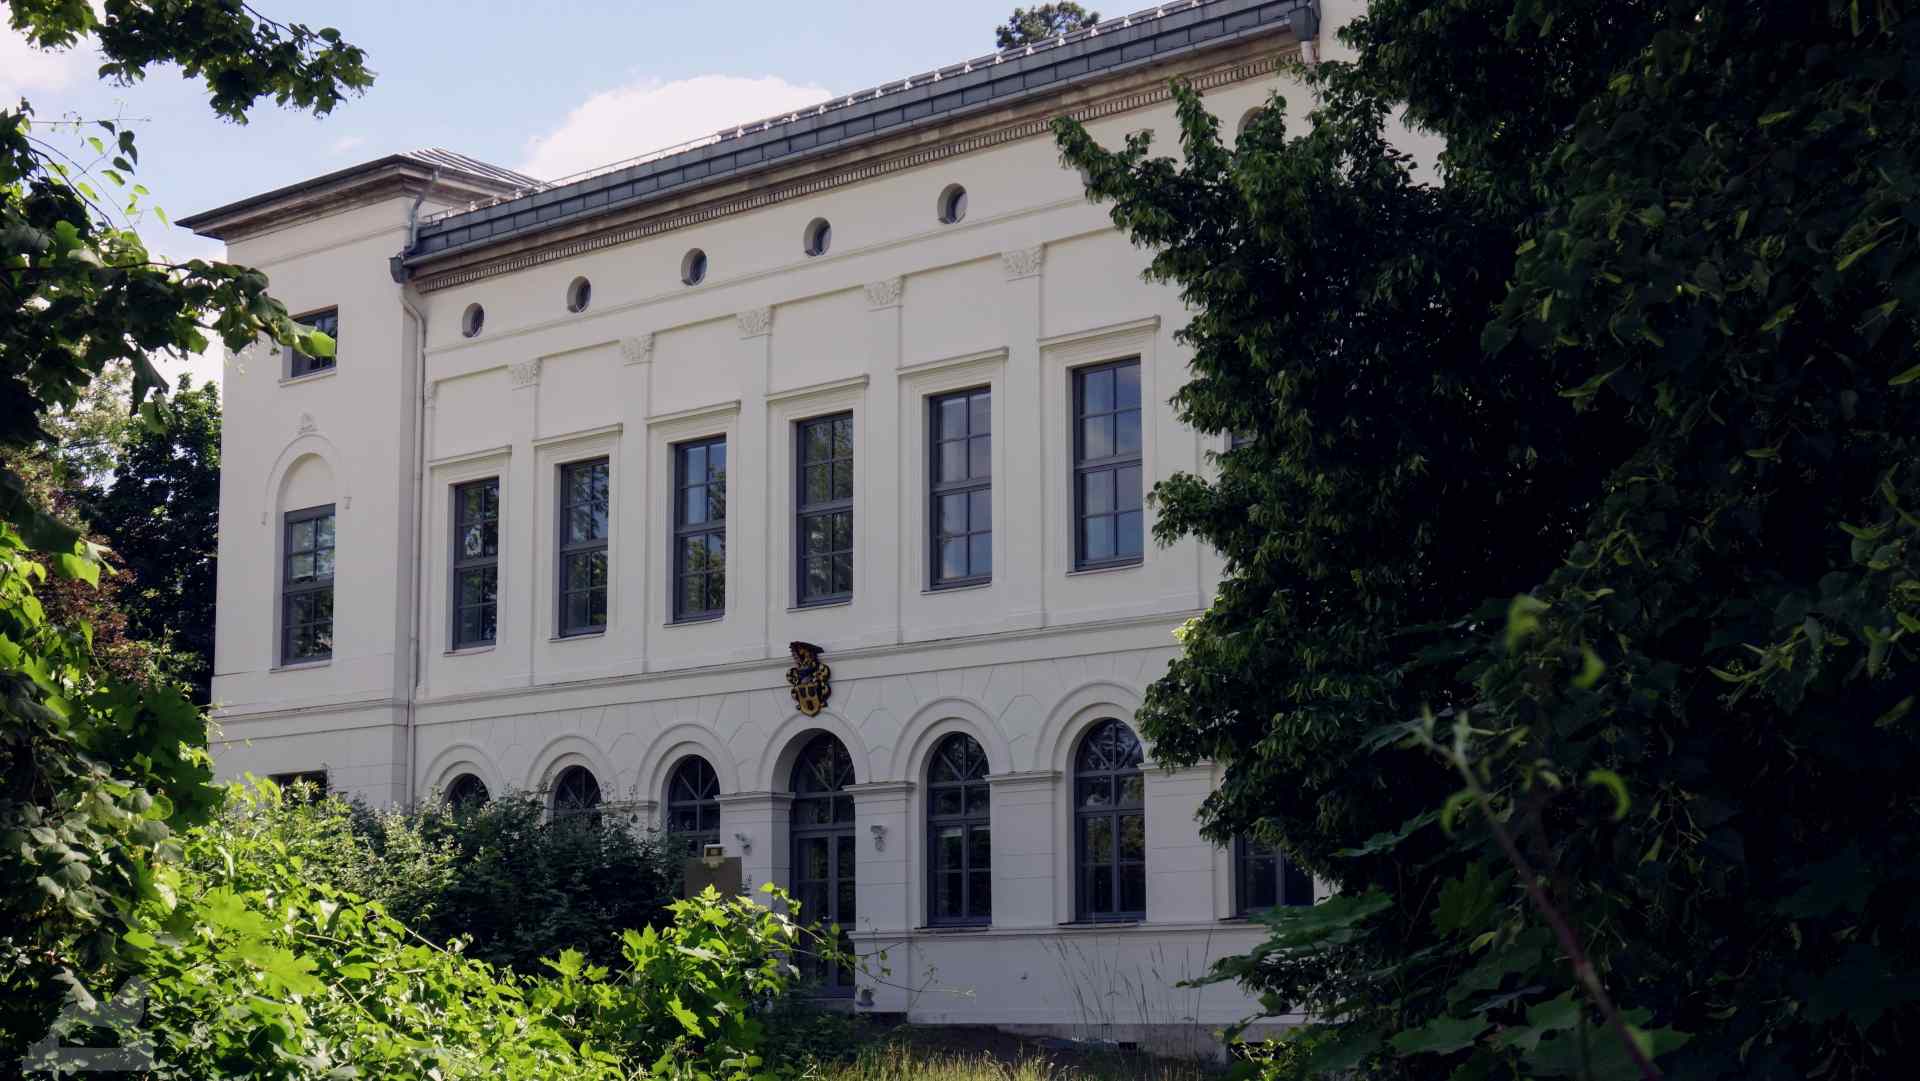 Villa von Bülow, Sitz des Georg-Eckert-Institut für internationale Schulbuchforschung